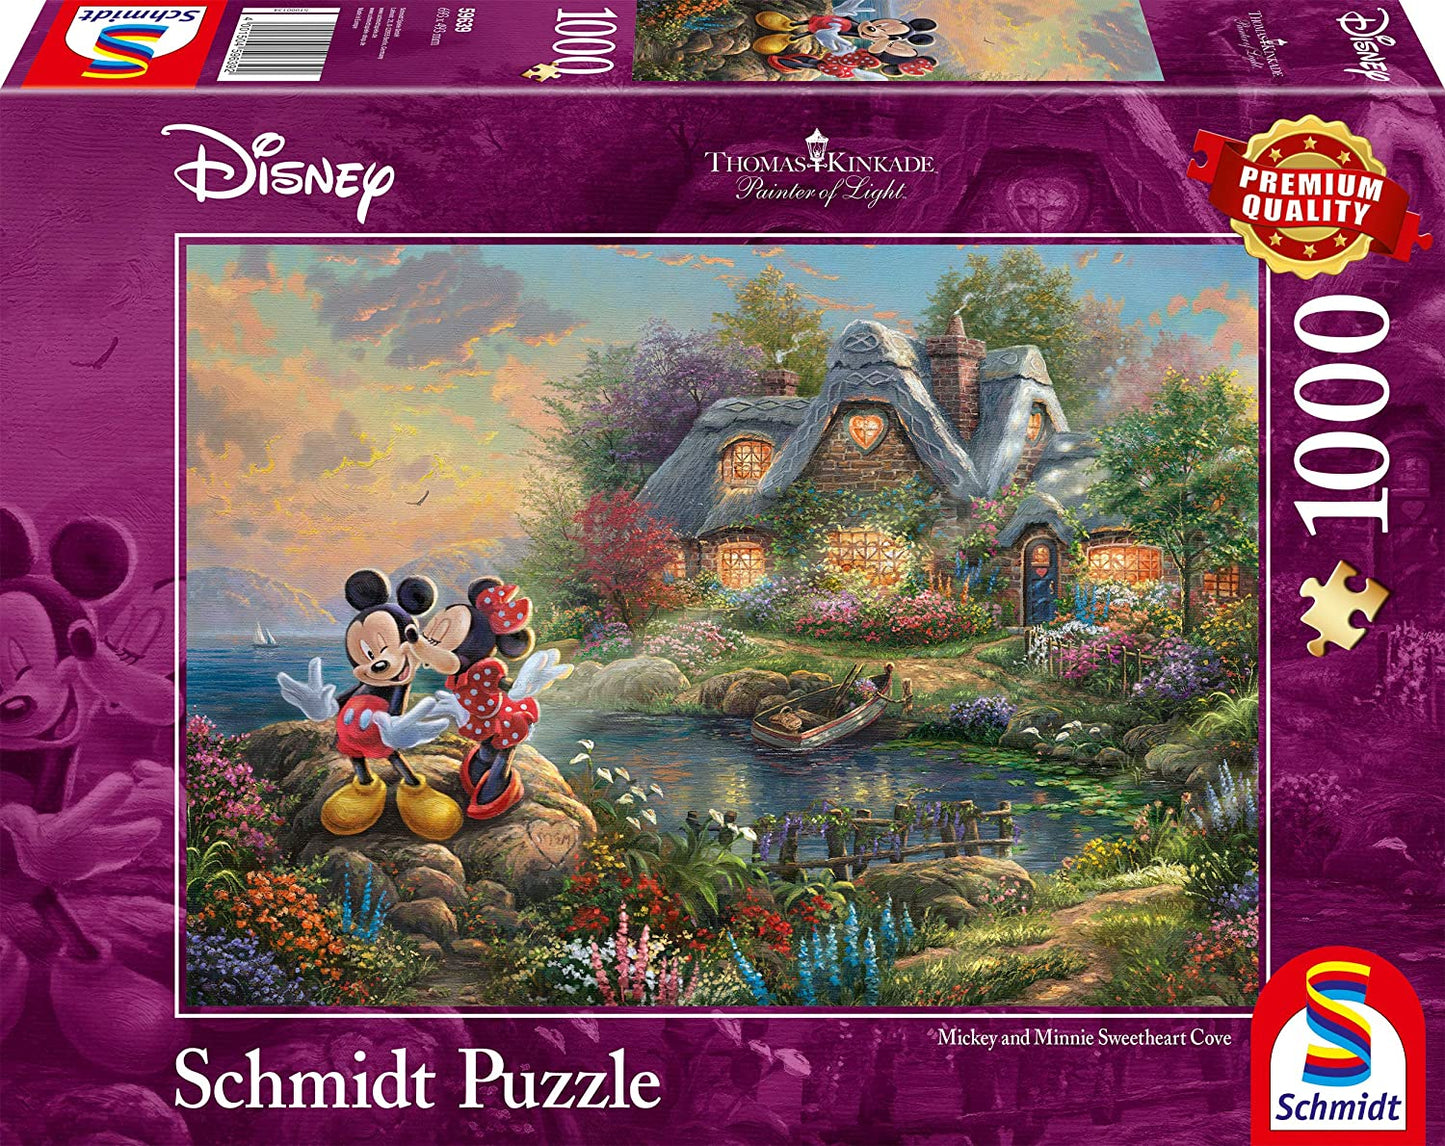 Schmidt - Thomas Kinkade: Disney Mickey & Minnie Sweetheart Cove - 1000 Piece Jigsaw Puzzle